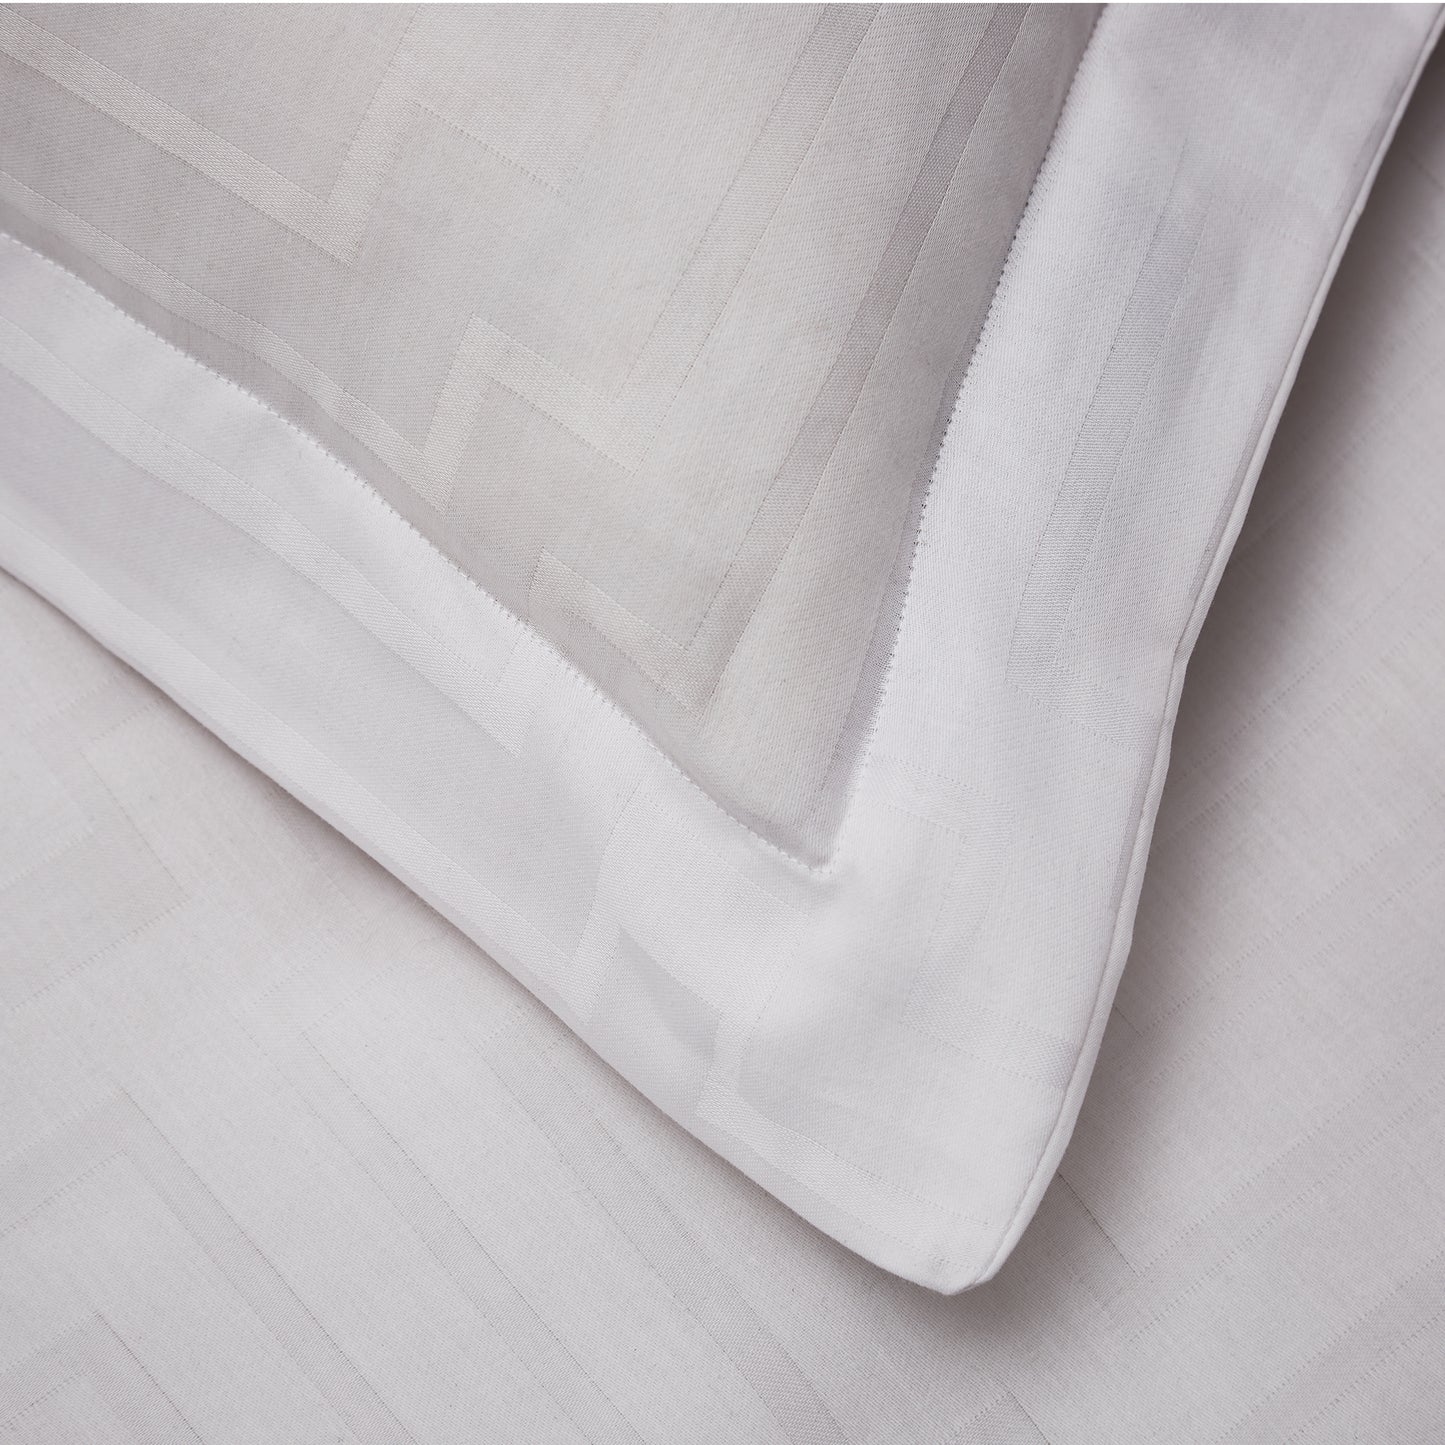 Bianca White Satin Geo Jacquard Cotton Oxford Pillowcase Pair